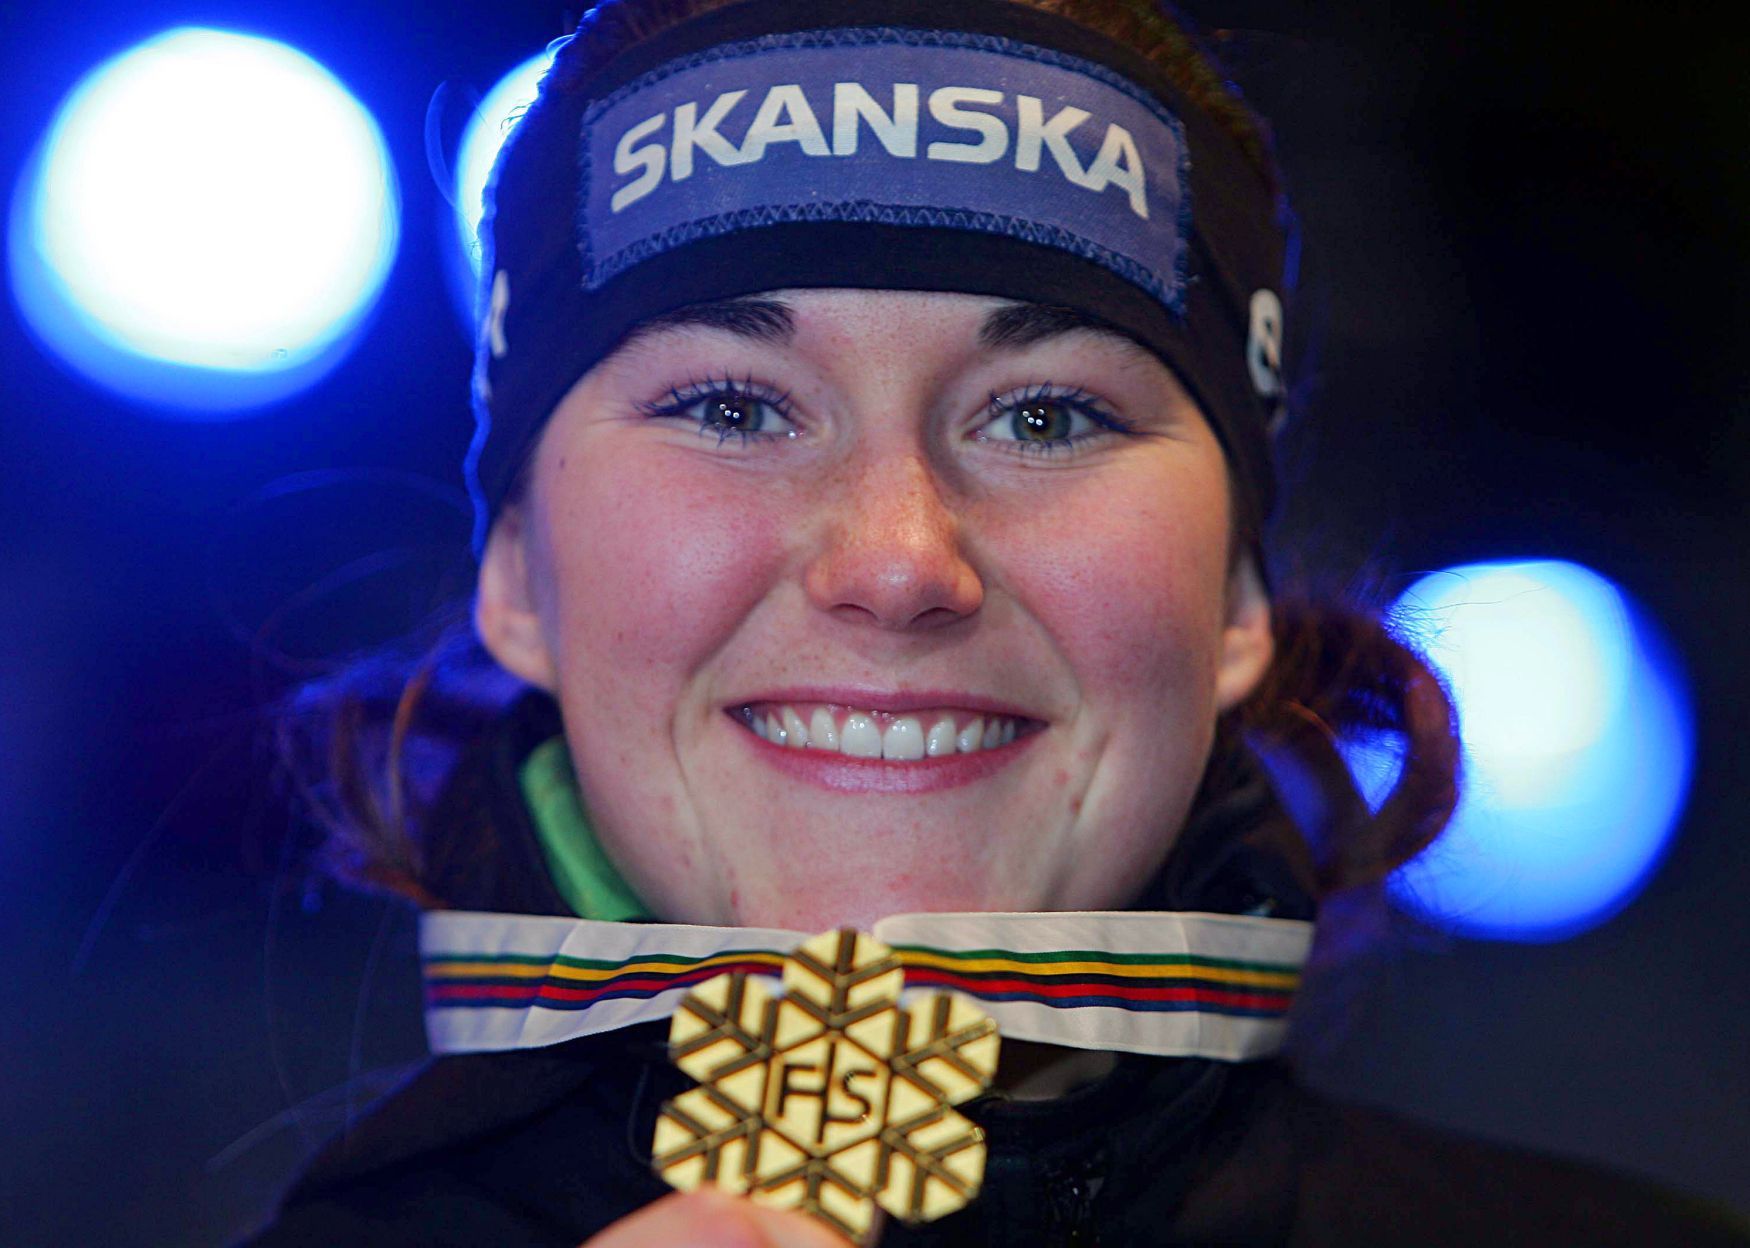 Šárka Strachová (ještě pod dívčím jménem Záhorbská) se zlatou medailí ze slalomu na MS v Aare 2007